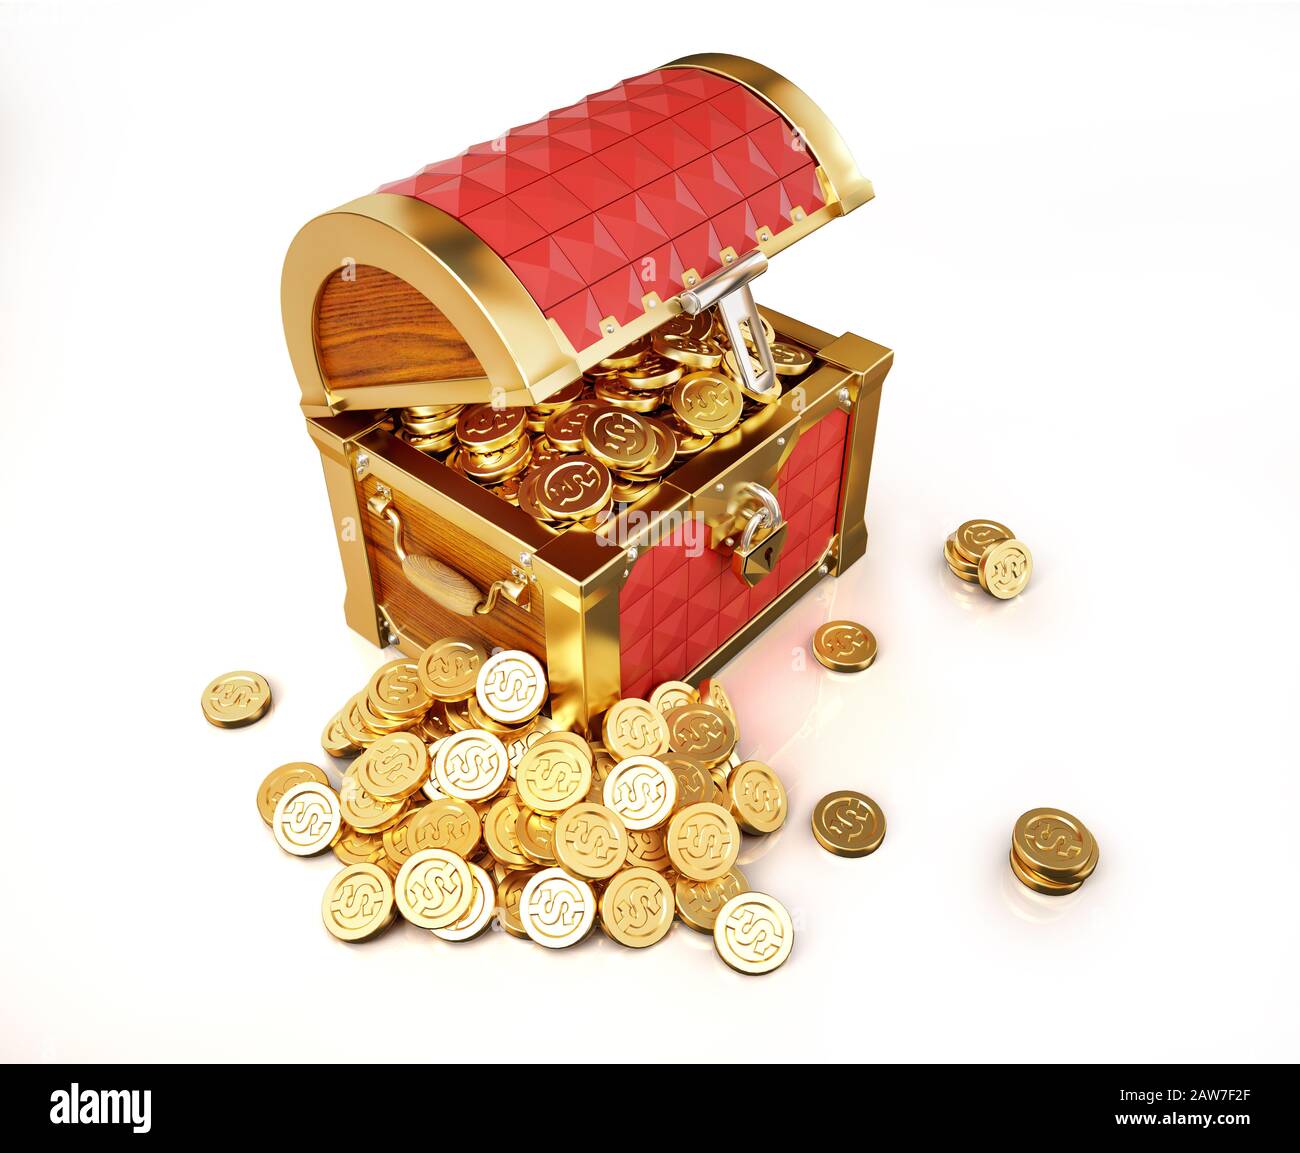 Coffre au Trésor plein de pièces d'or, certains ont récolté à l'extérieur. Illustration tridimensionnelle sur fond blanc. Banque D'Images